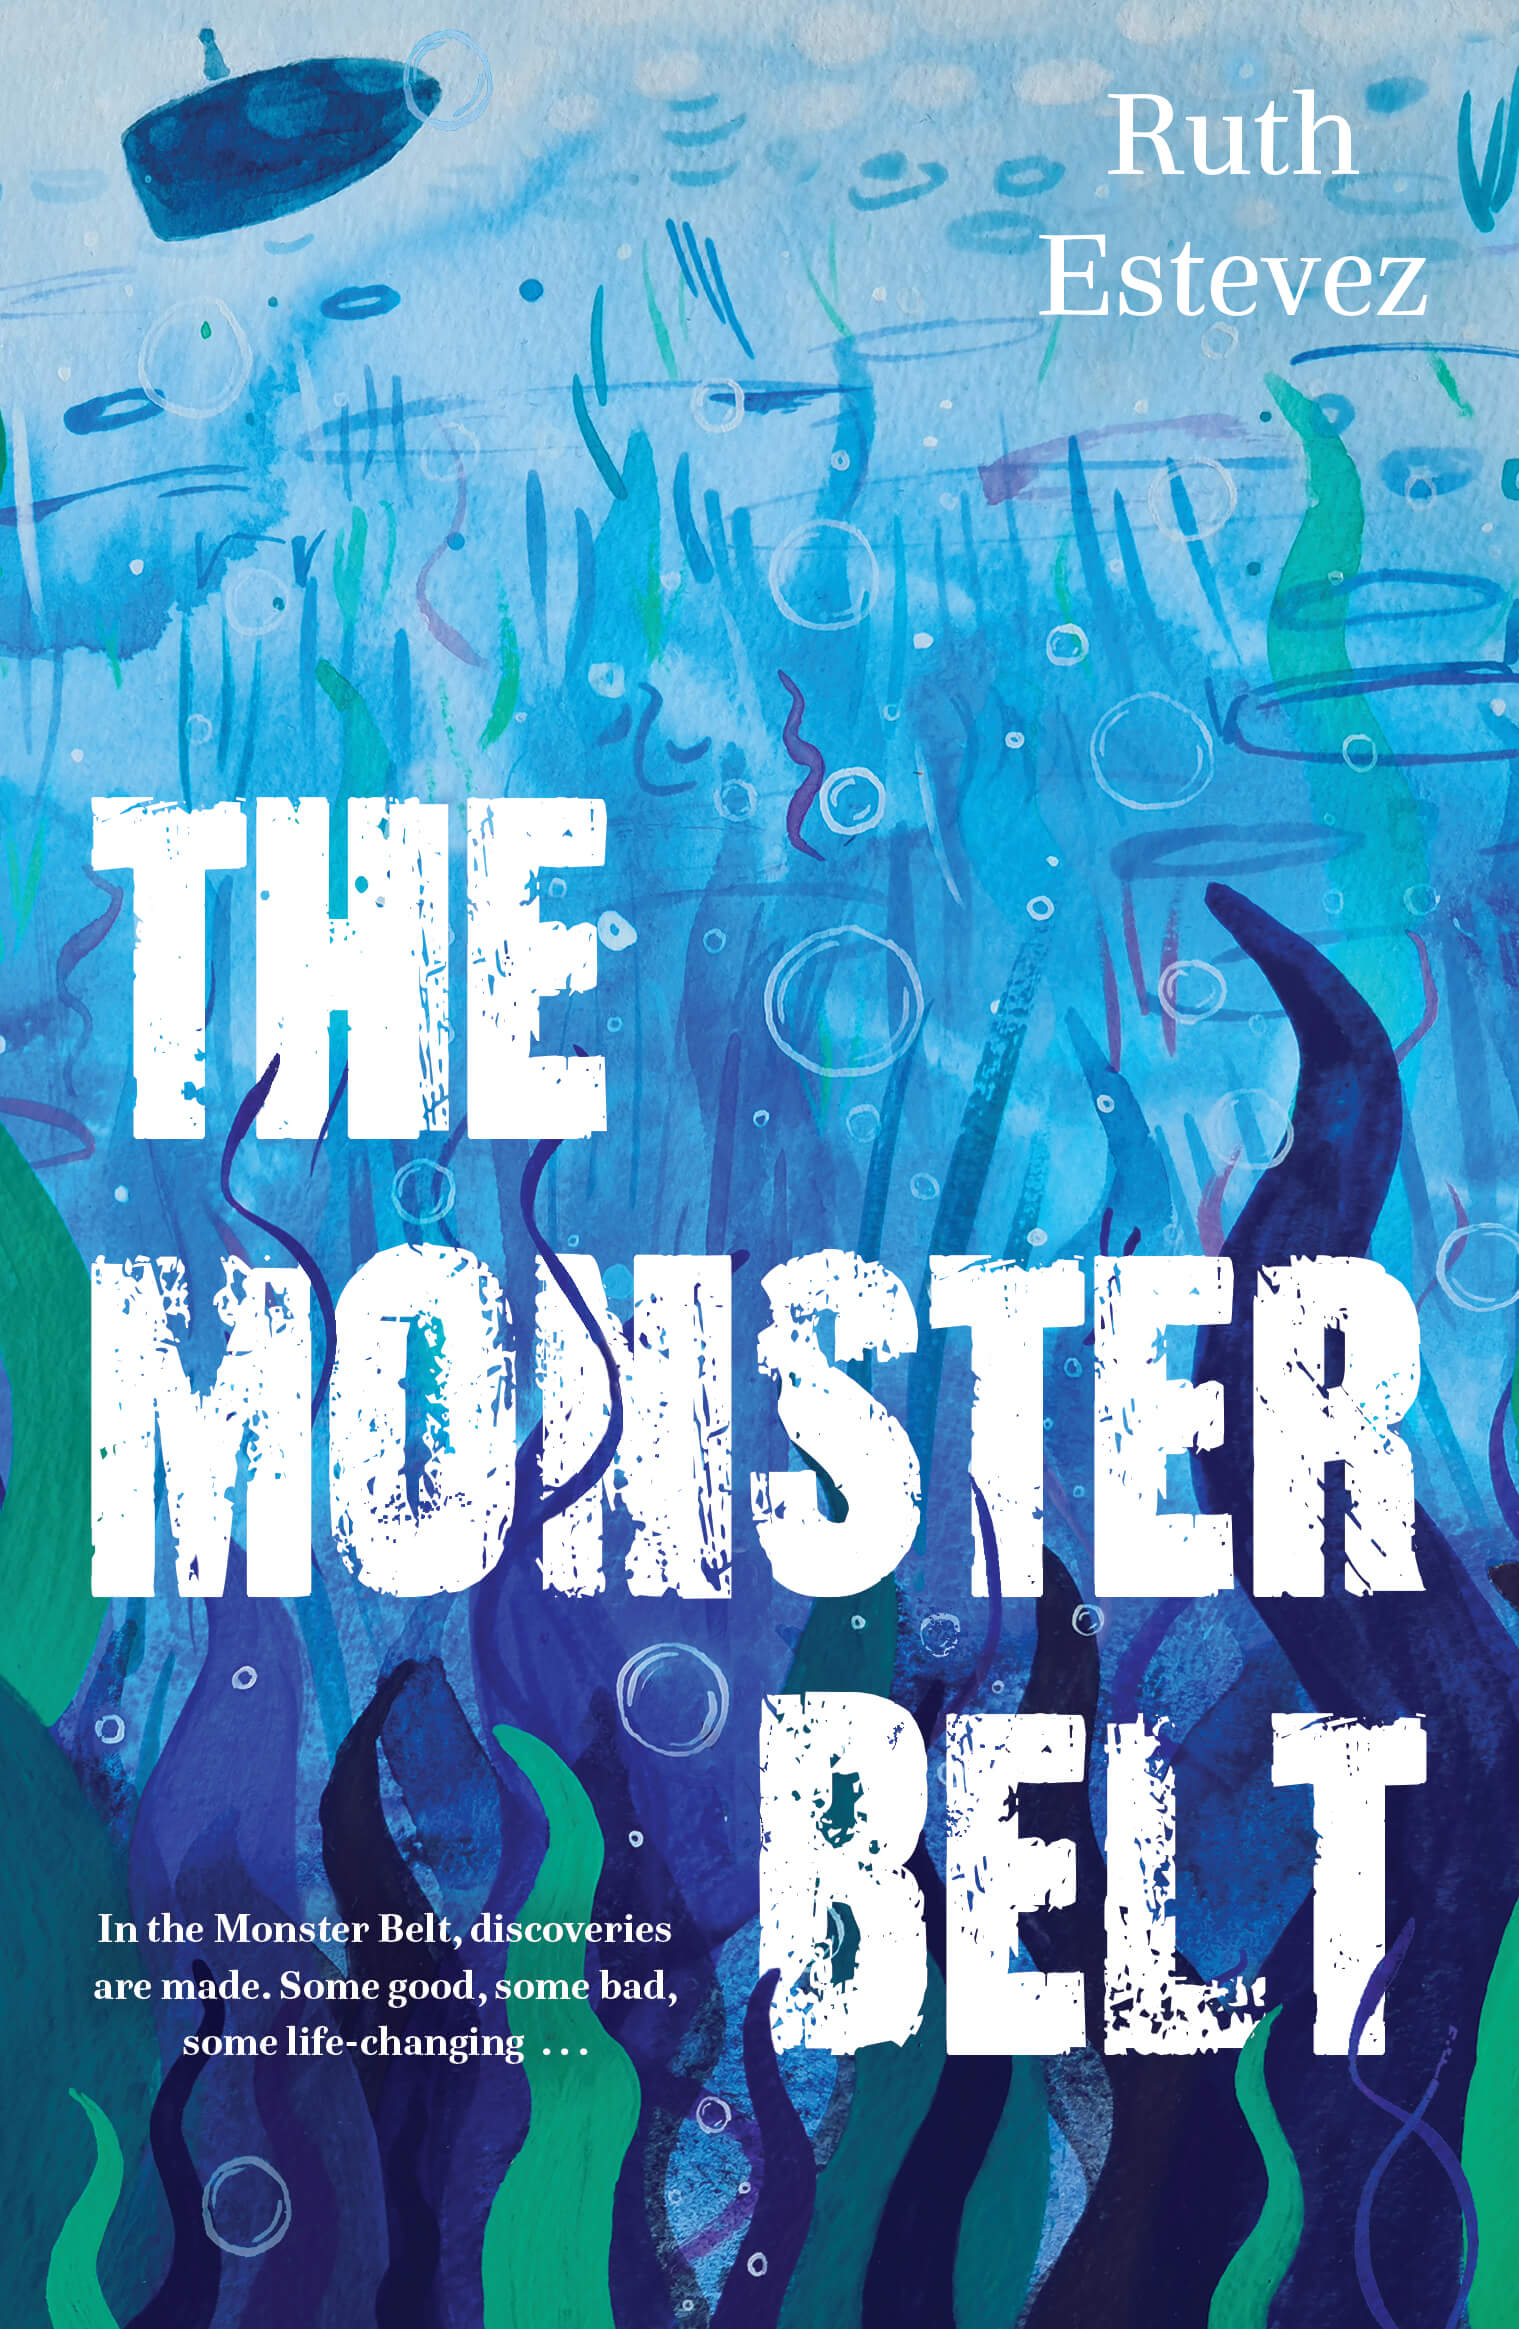 The Monster Belt